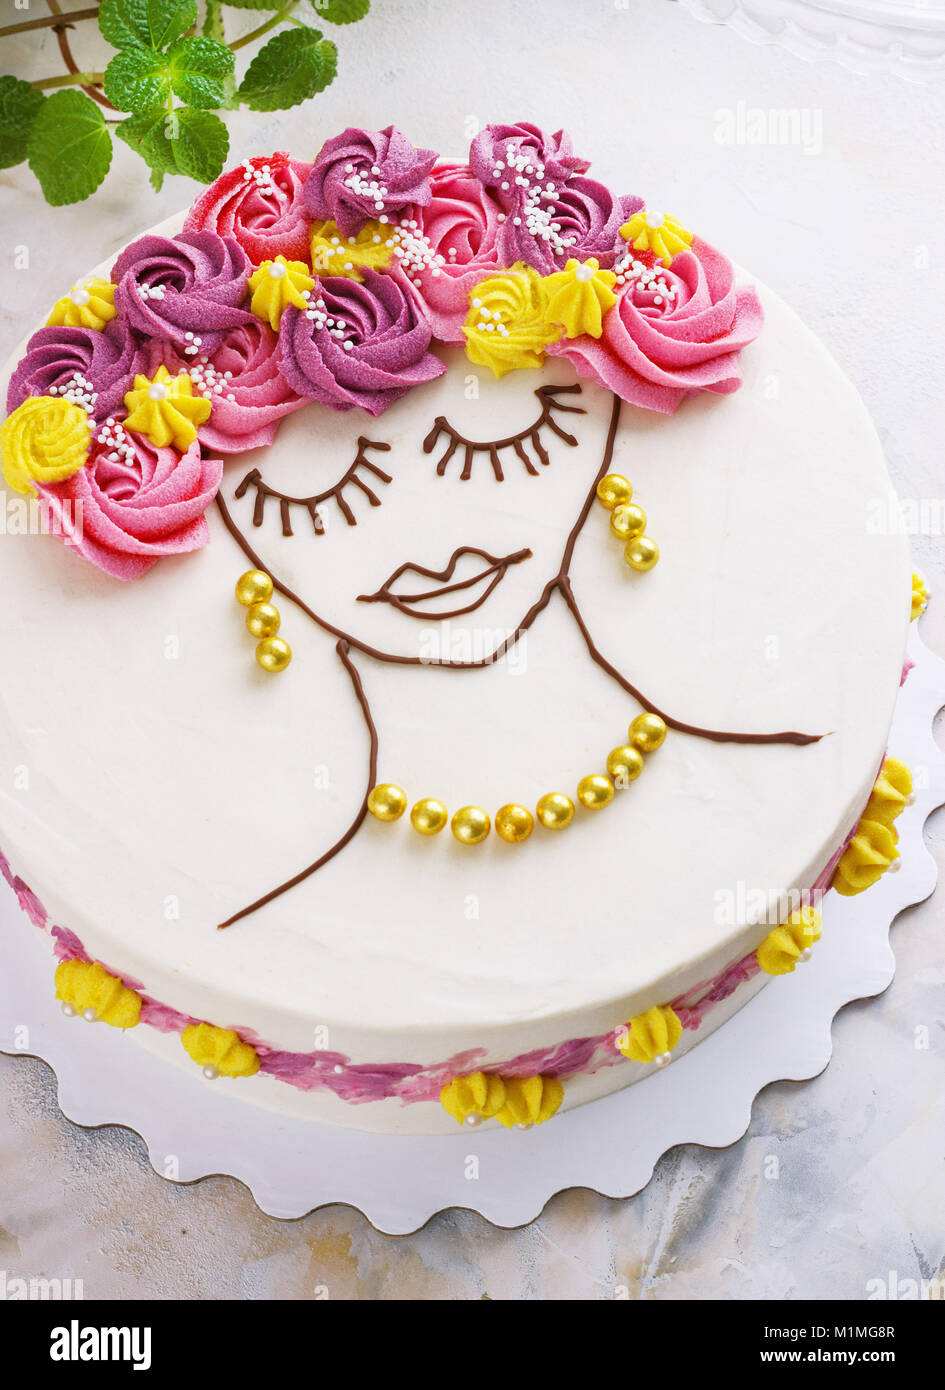 Gâteau de fête avec des fleurs crème et une fille visage sur un fond clair Banque D'Images